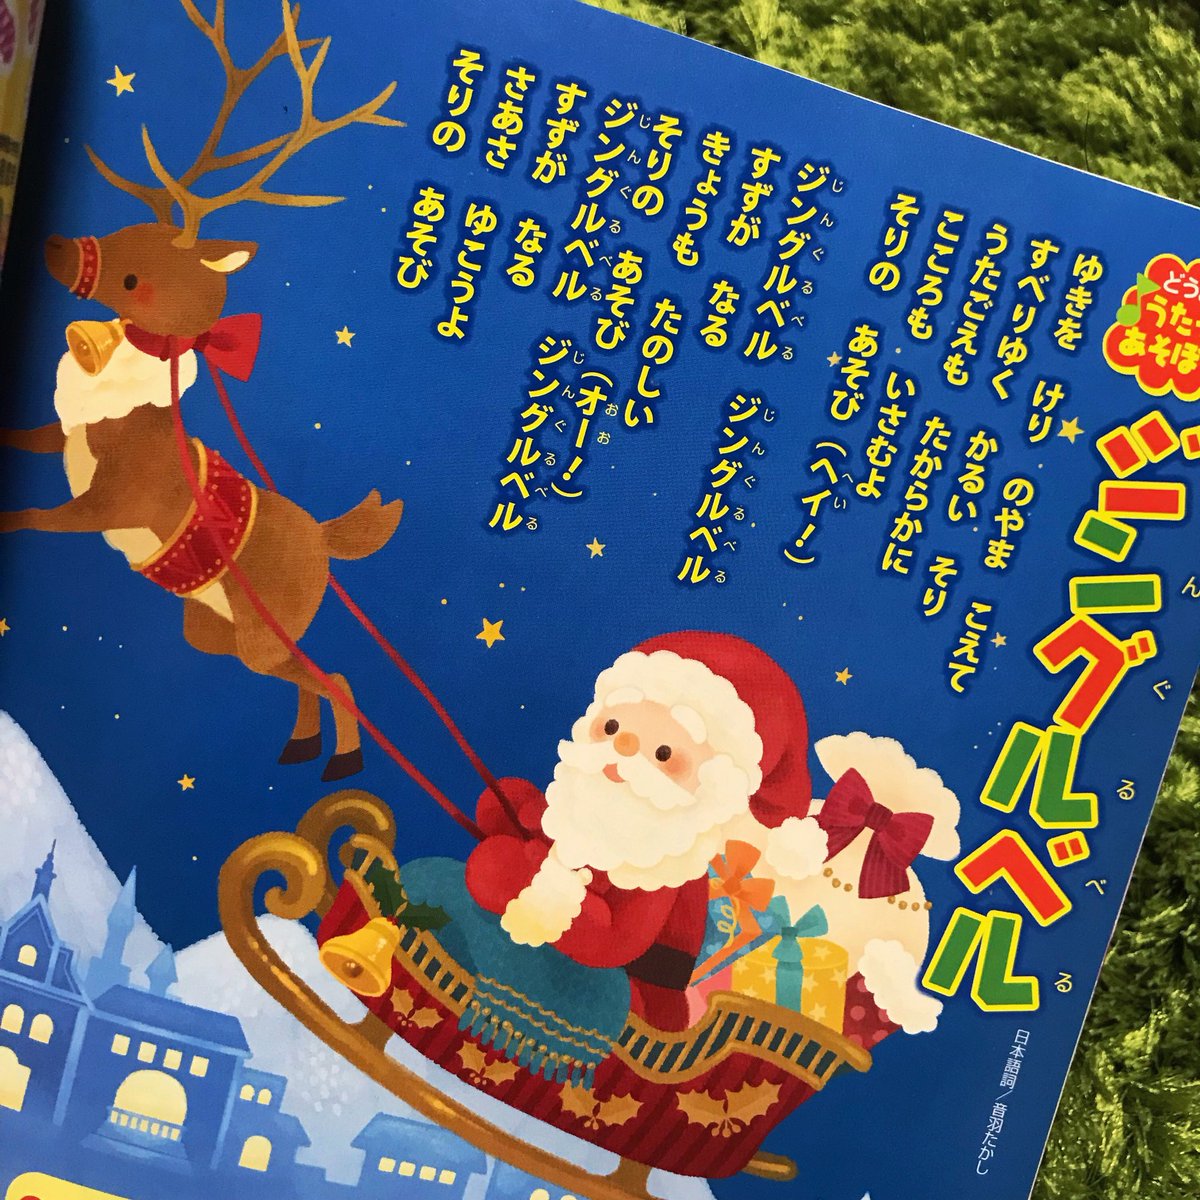 Moco リラックマポップアップ絵本発売中 V Twitter めばえ12月号の童謡のページのイラストを描かせていただきました あまりに嬉しくて このめばえ12月号は宝物です クリスマス